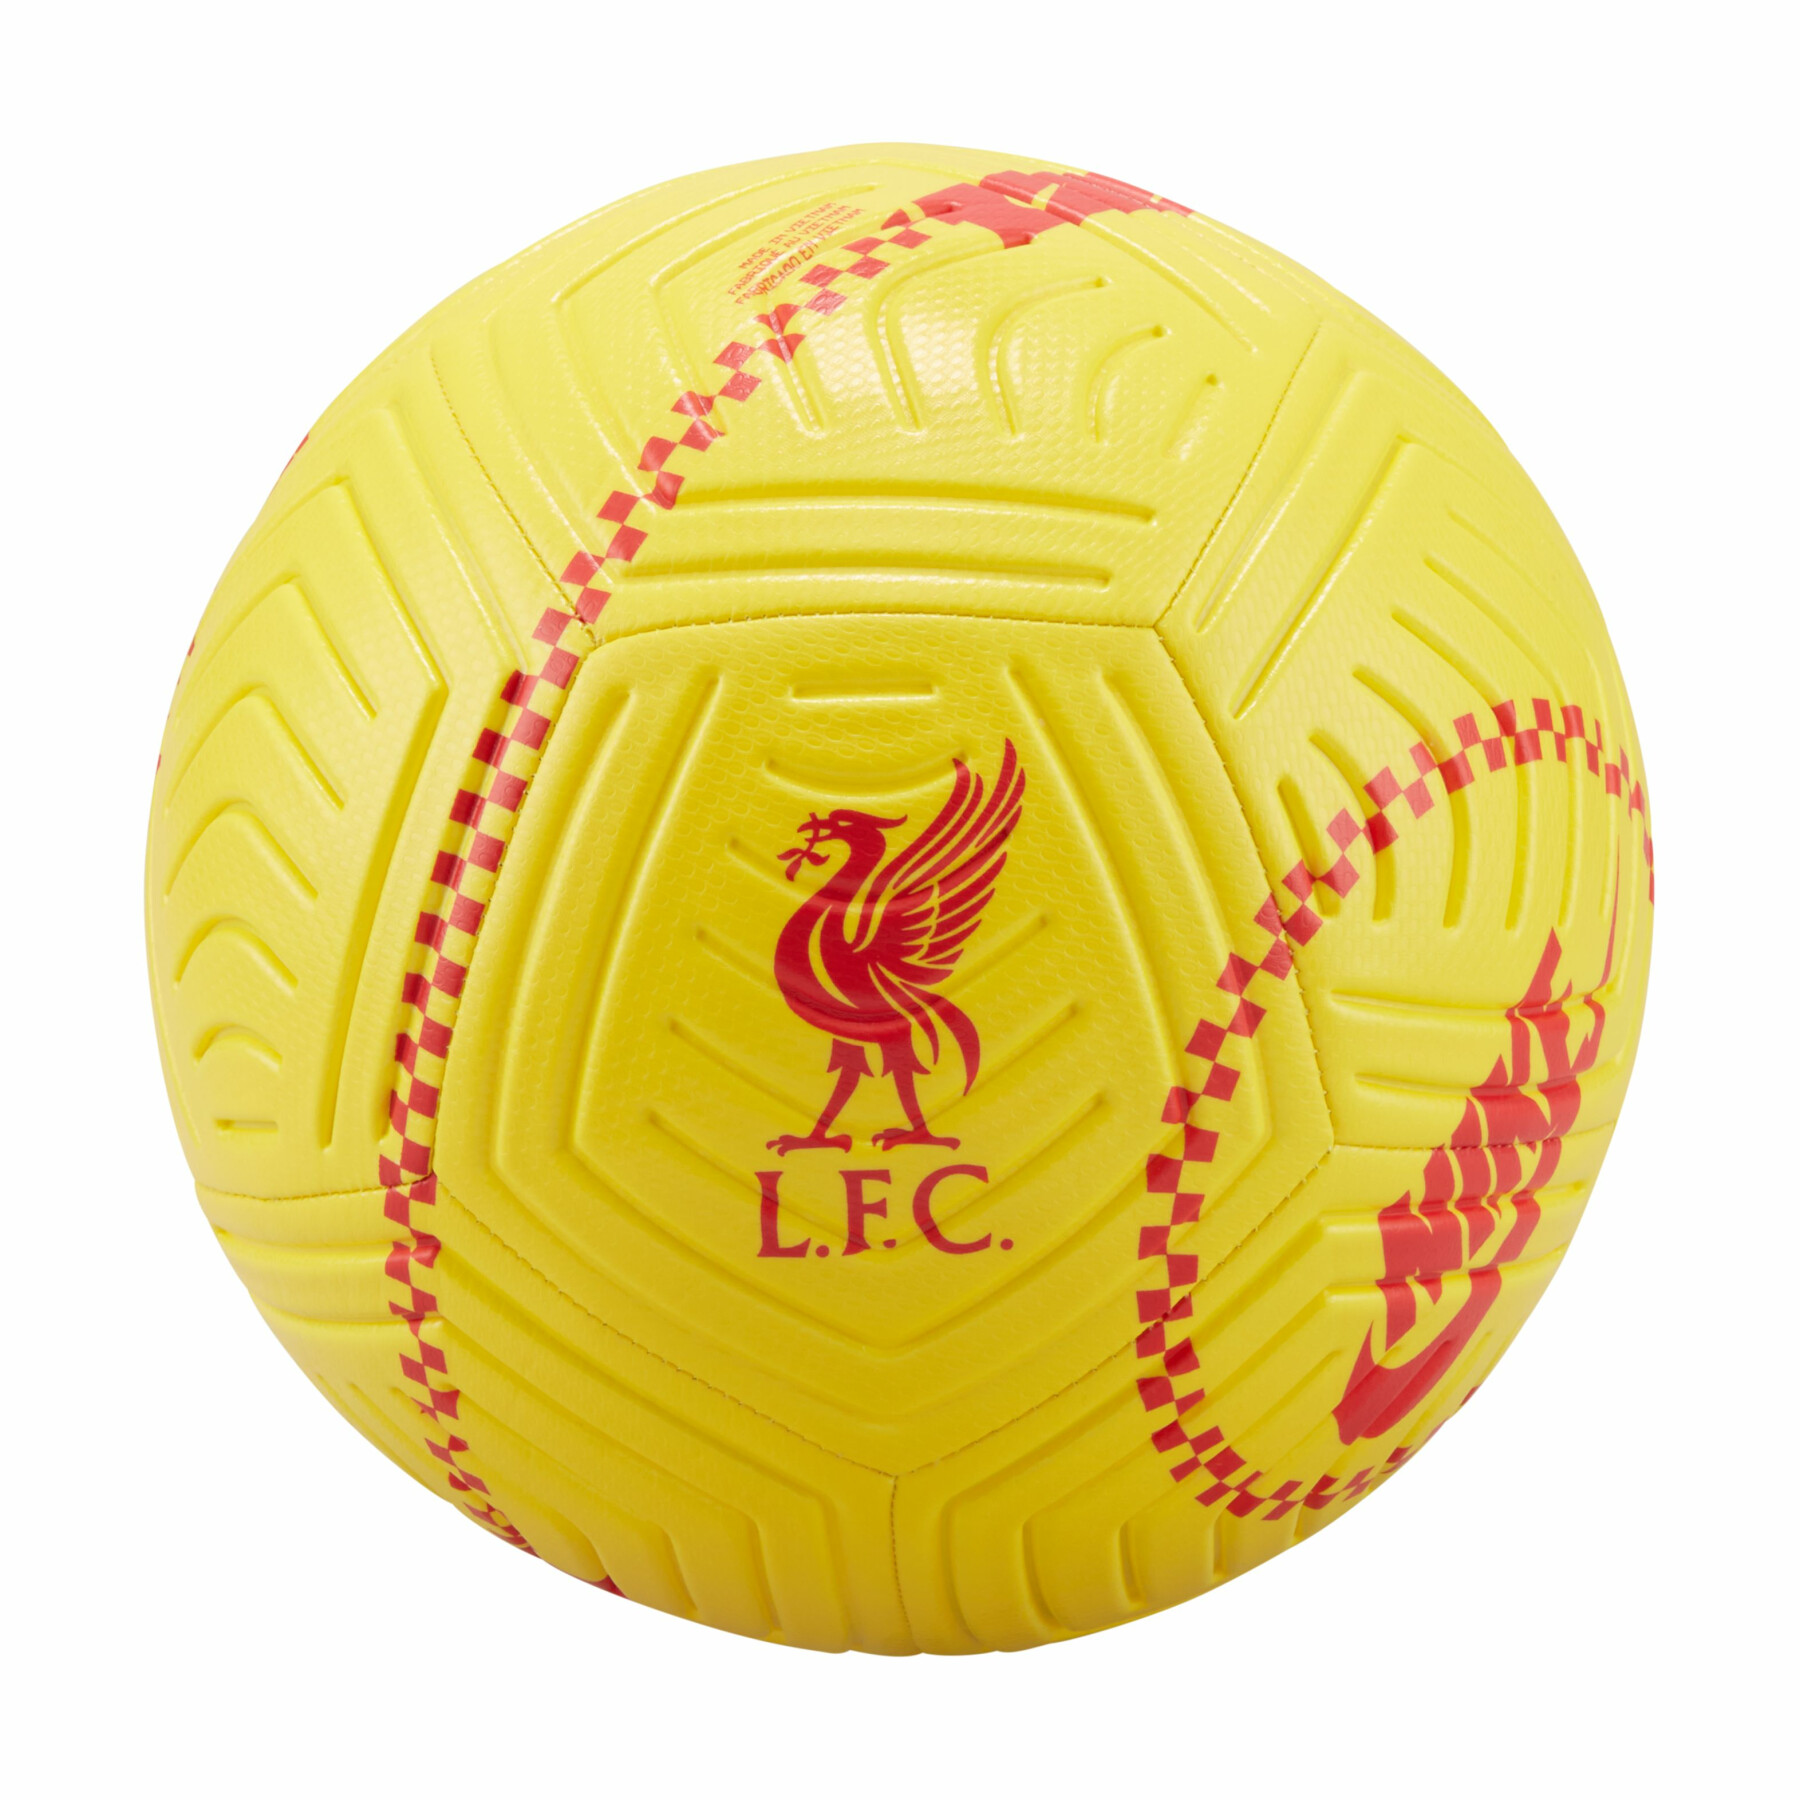 Balon Liverpool FC Strike 2021/22